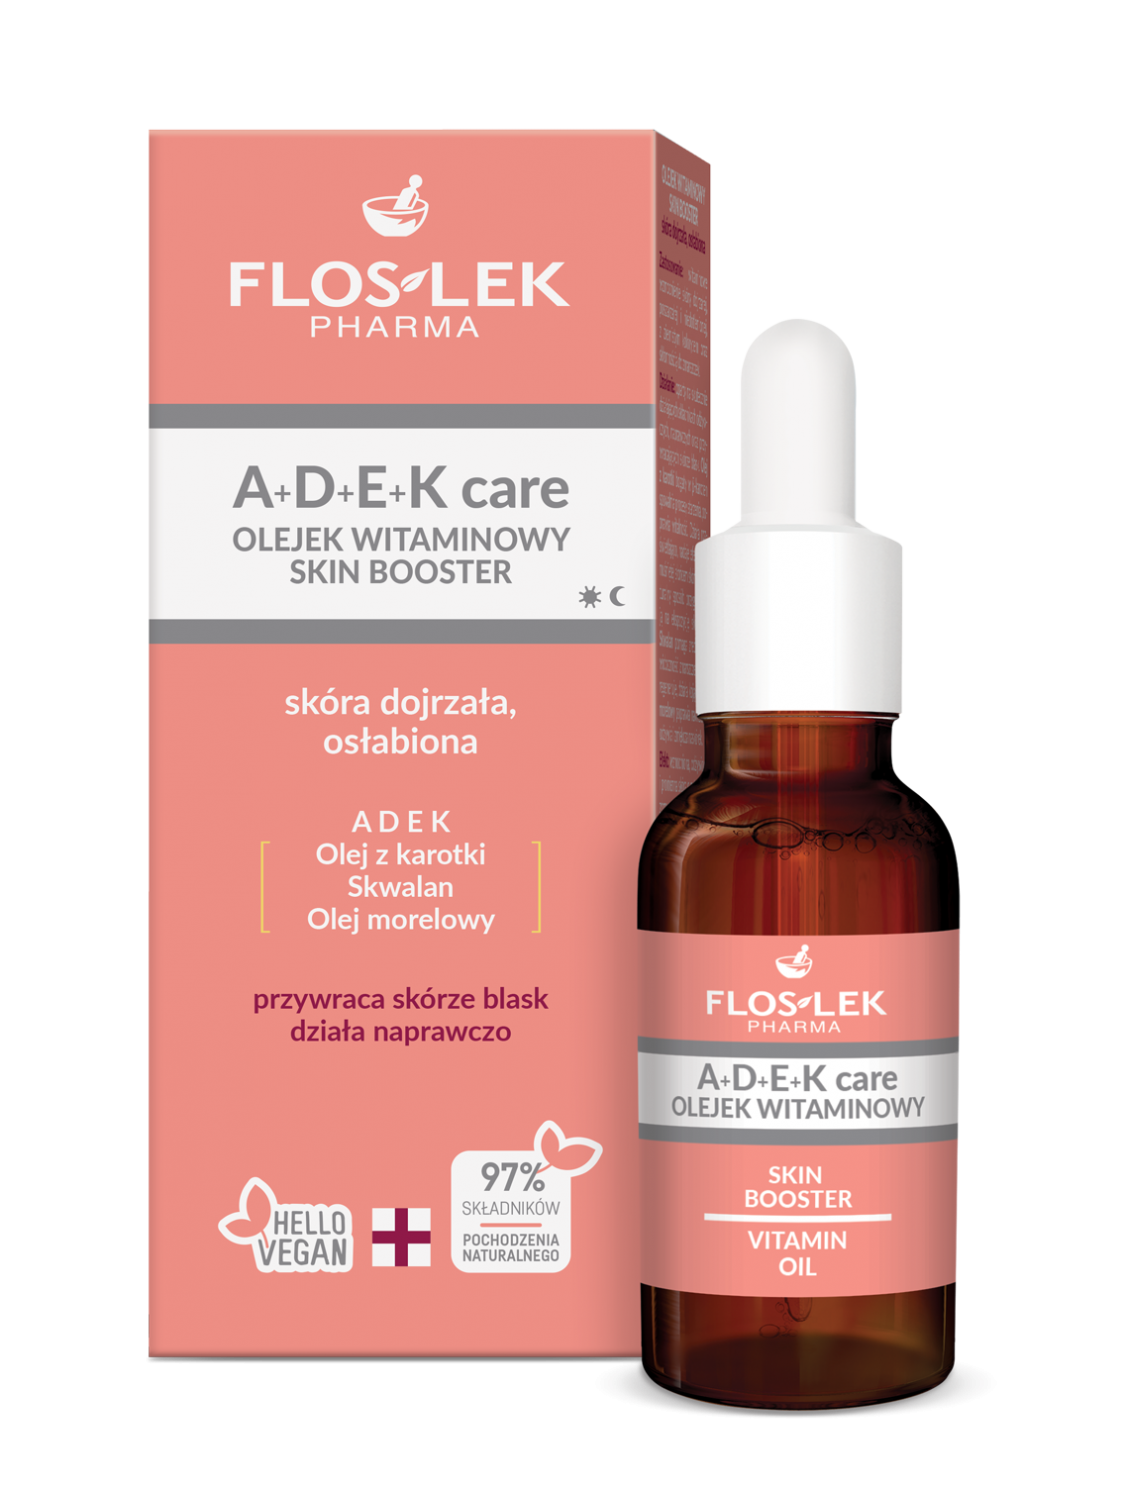 A+D+E+K care Skin Booster vitamin oil 30 ml - FLOSLEK